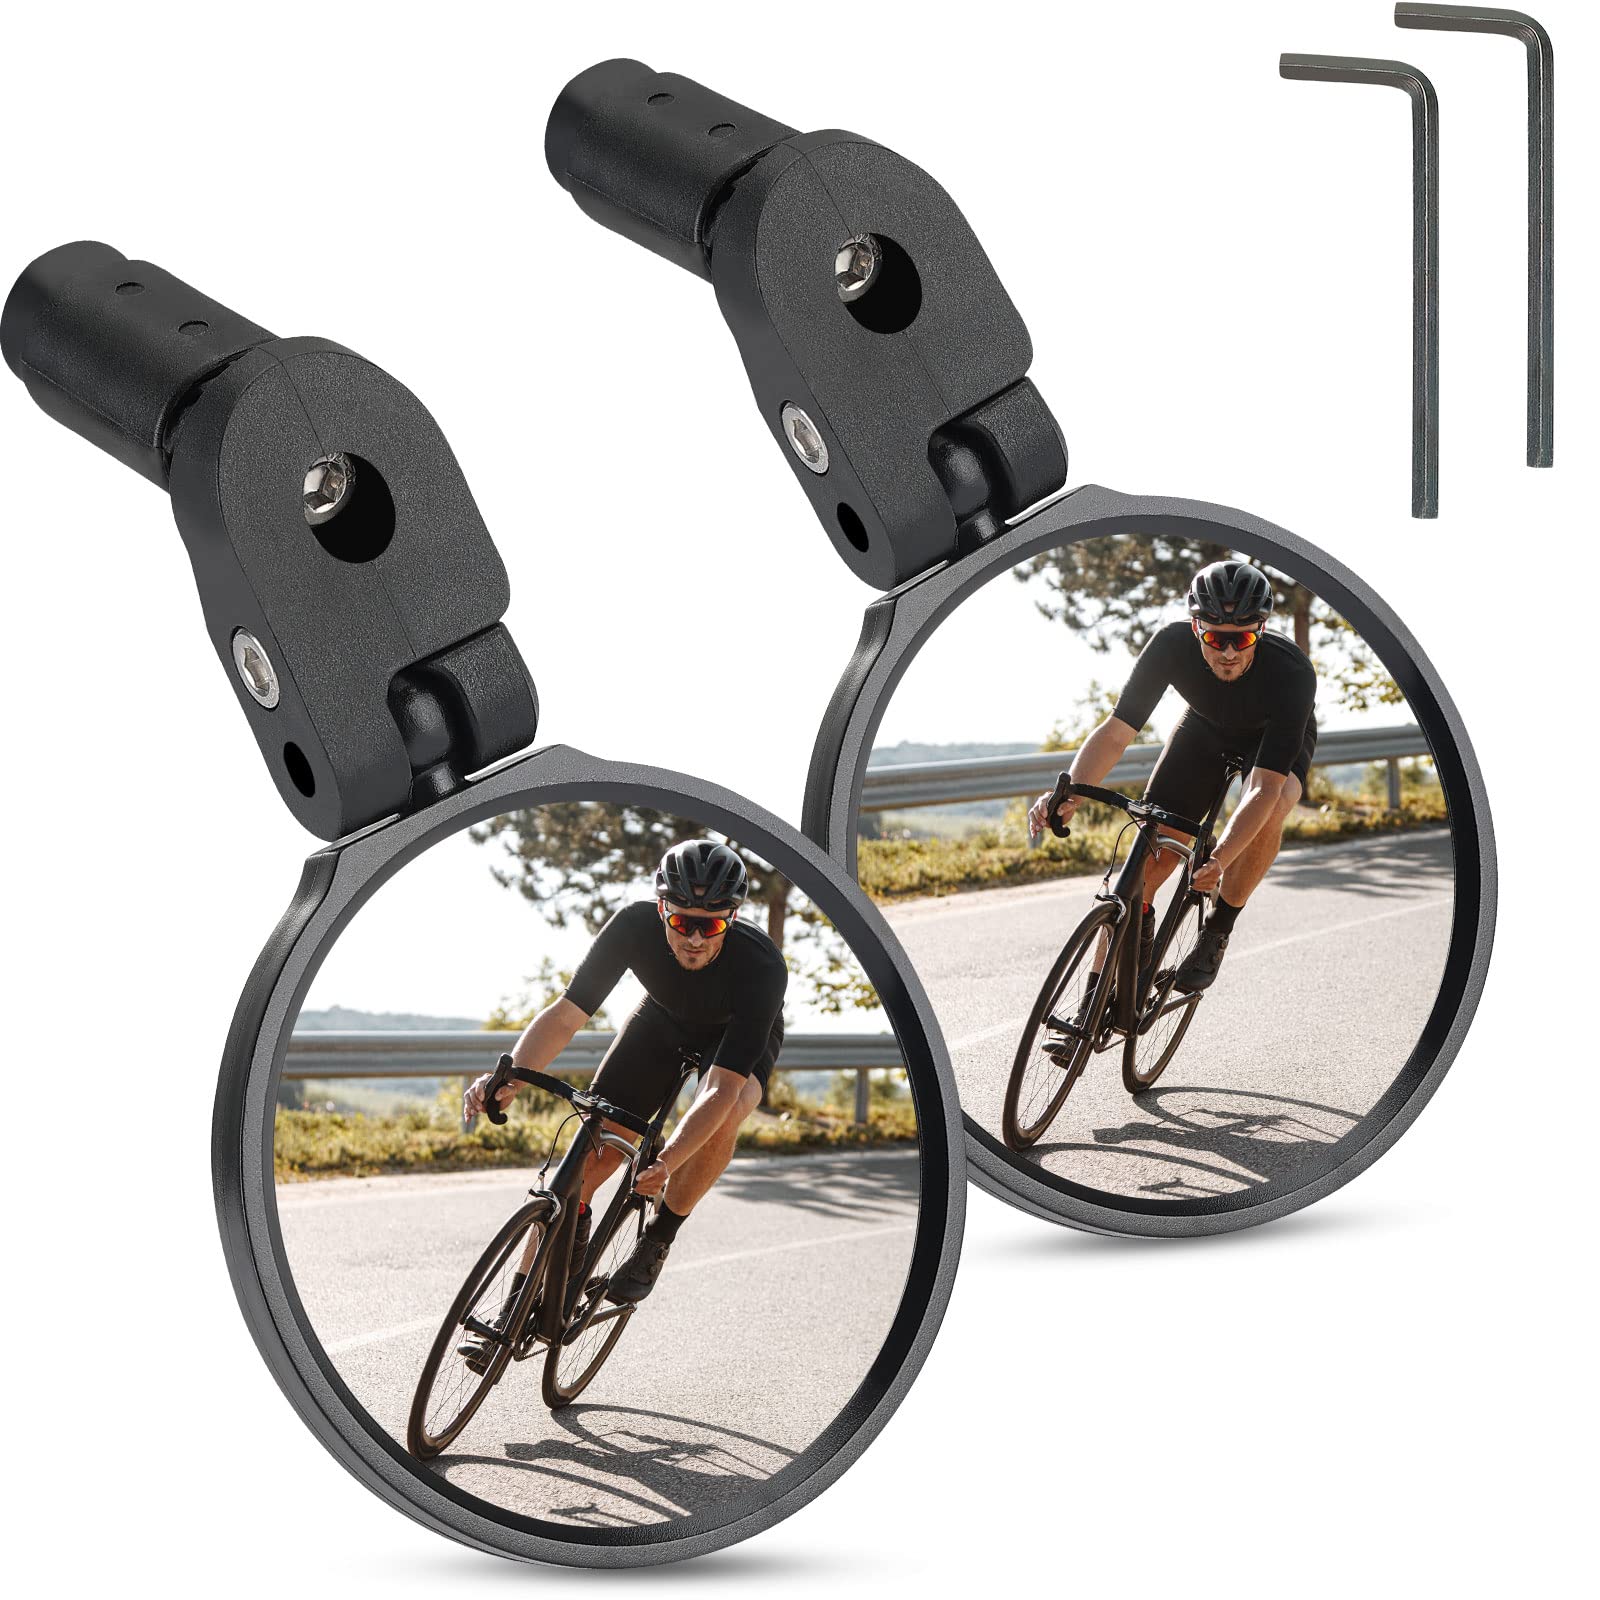 KEMIMOTO Fahrradspiegel Klappbare Rückspiegel Fahrradspiegel für Lenker 17,4-22mm, 360 ° Einstellbare Lenkerendspiegel, Universal Fahrradspiegel für E-Bikes Mountainbike Rennrad E-Scooter (2 Stück) von KEMIMOTO